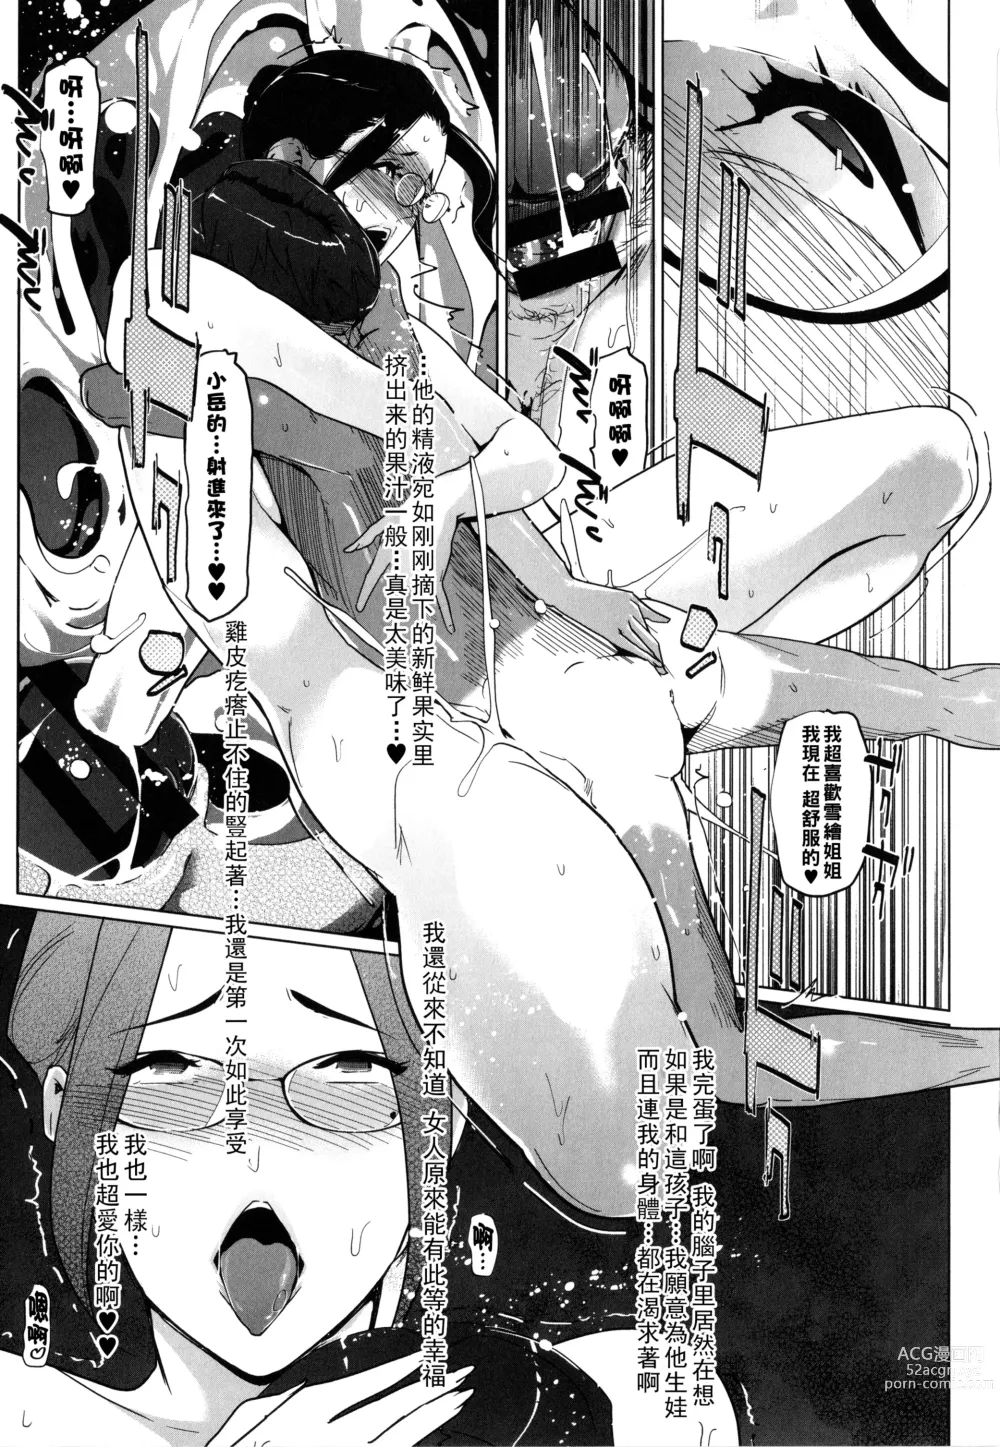 Page 61 of manga Natsu no Su